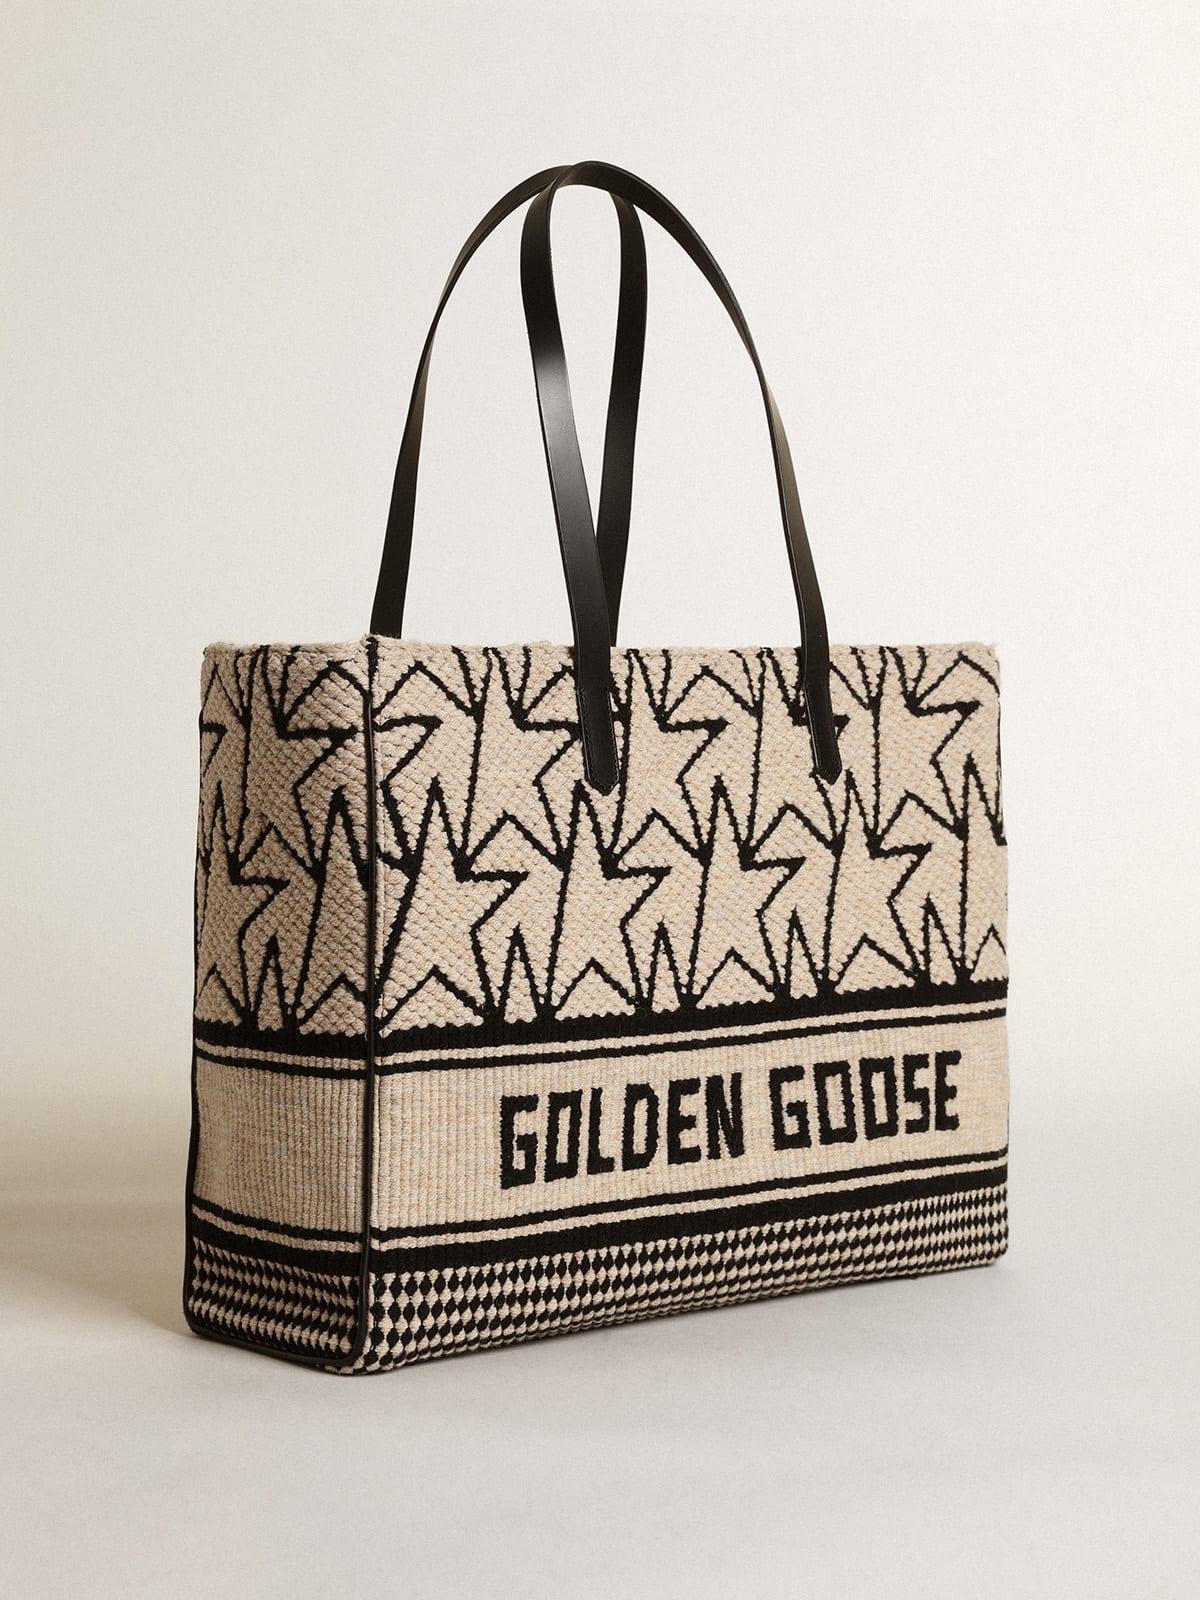 Golden Goose - Borsa California Bag East-West in lana jacquard color bianco latte con monogrammi e scritta Golden Goose di colore nero a contrasto in 